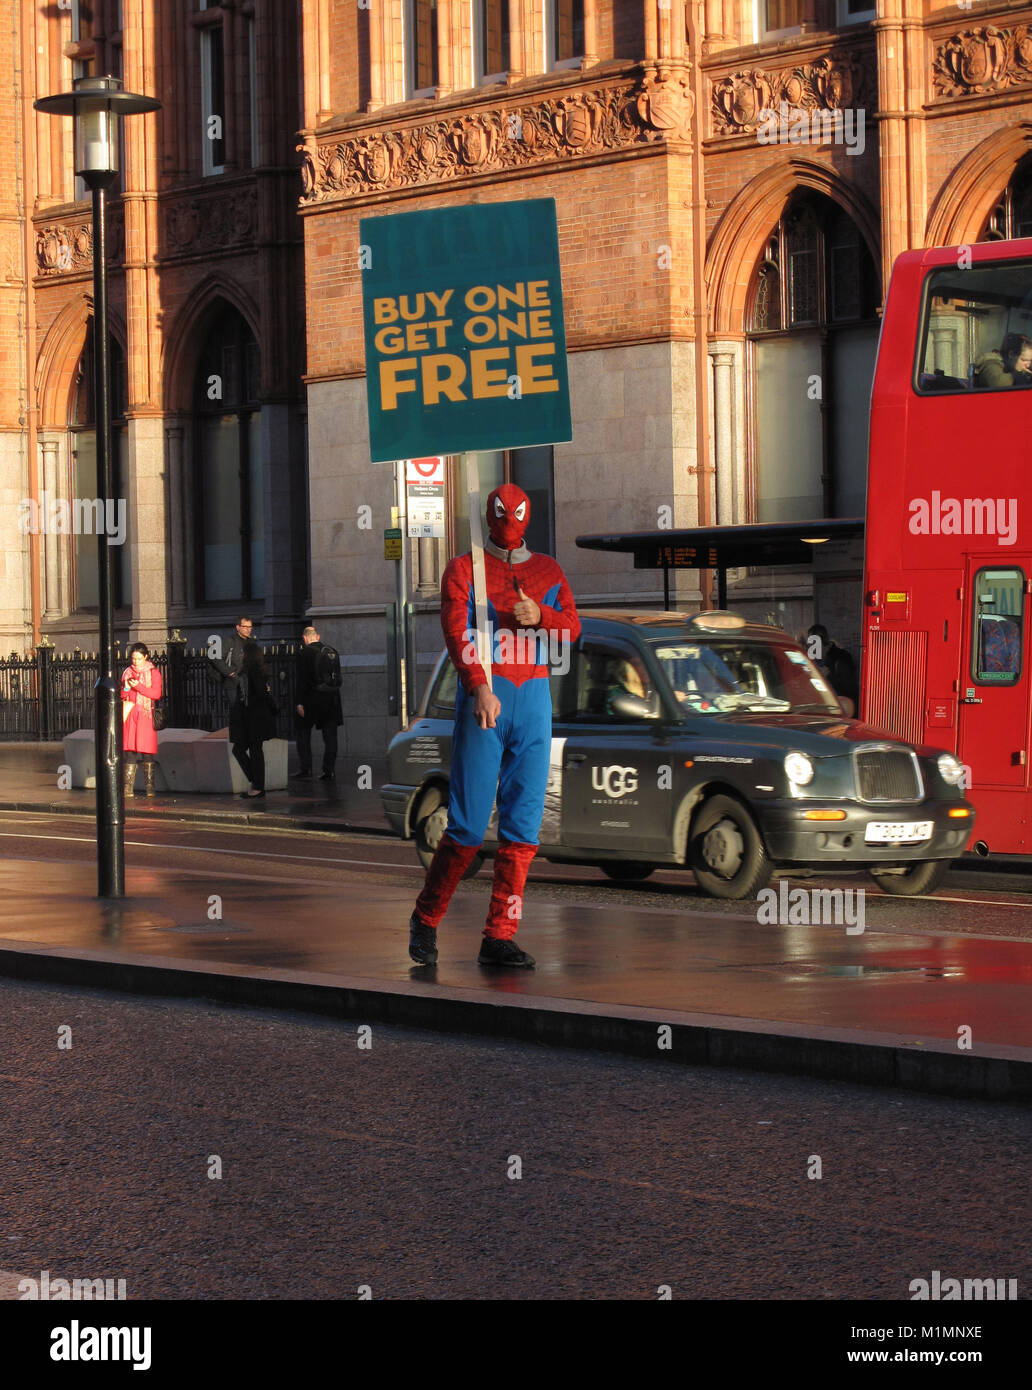 Homme dans un costume de spiderman la publicité achetée, une offerte" Banque D'Images